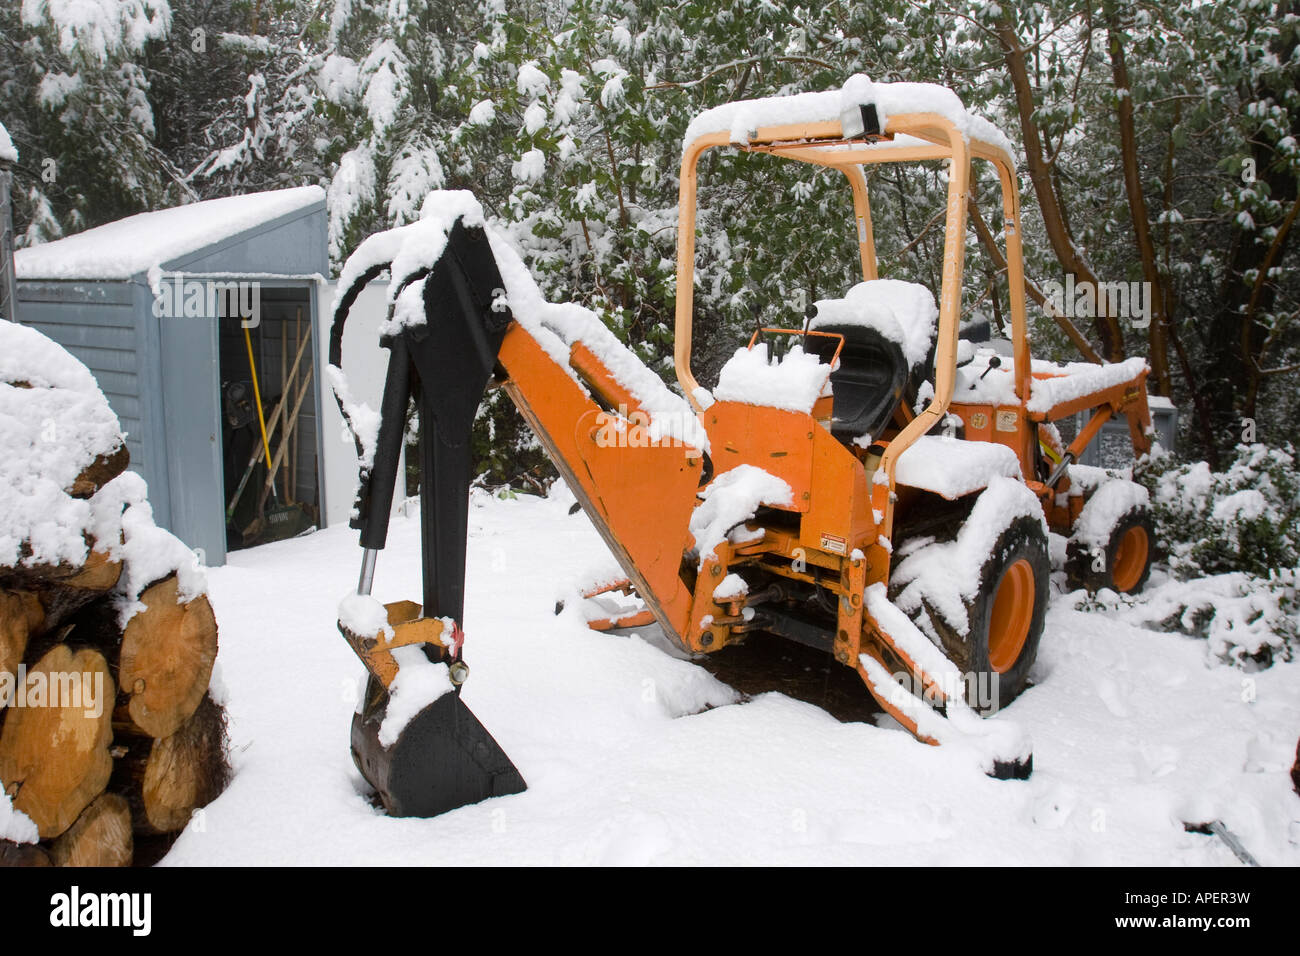 Schnee auf eine orange Traktor in einem ländlichen Winterszene mit Geräteschuppen und Stapel Brennholz gestapelt Stockfoto